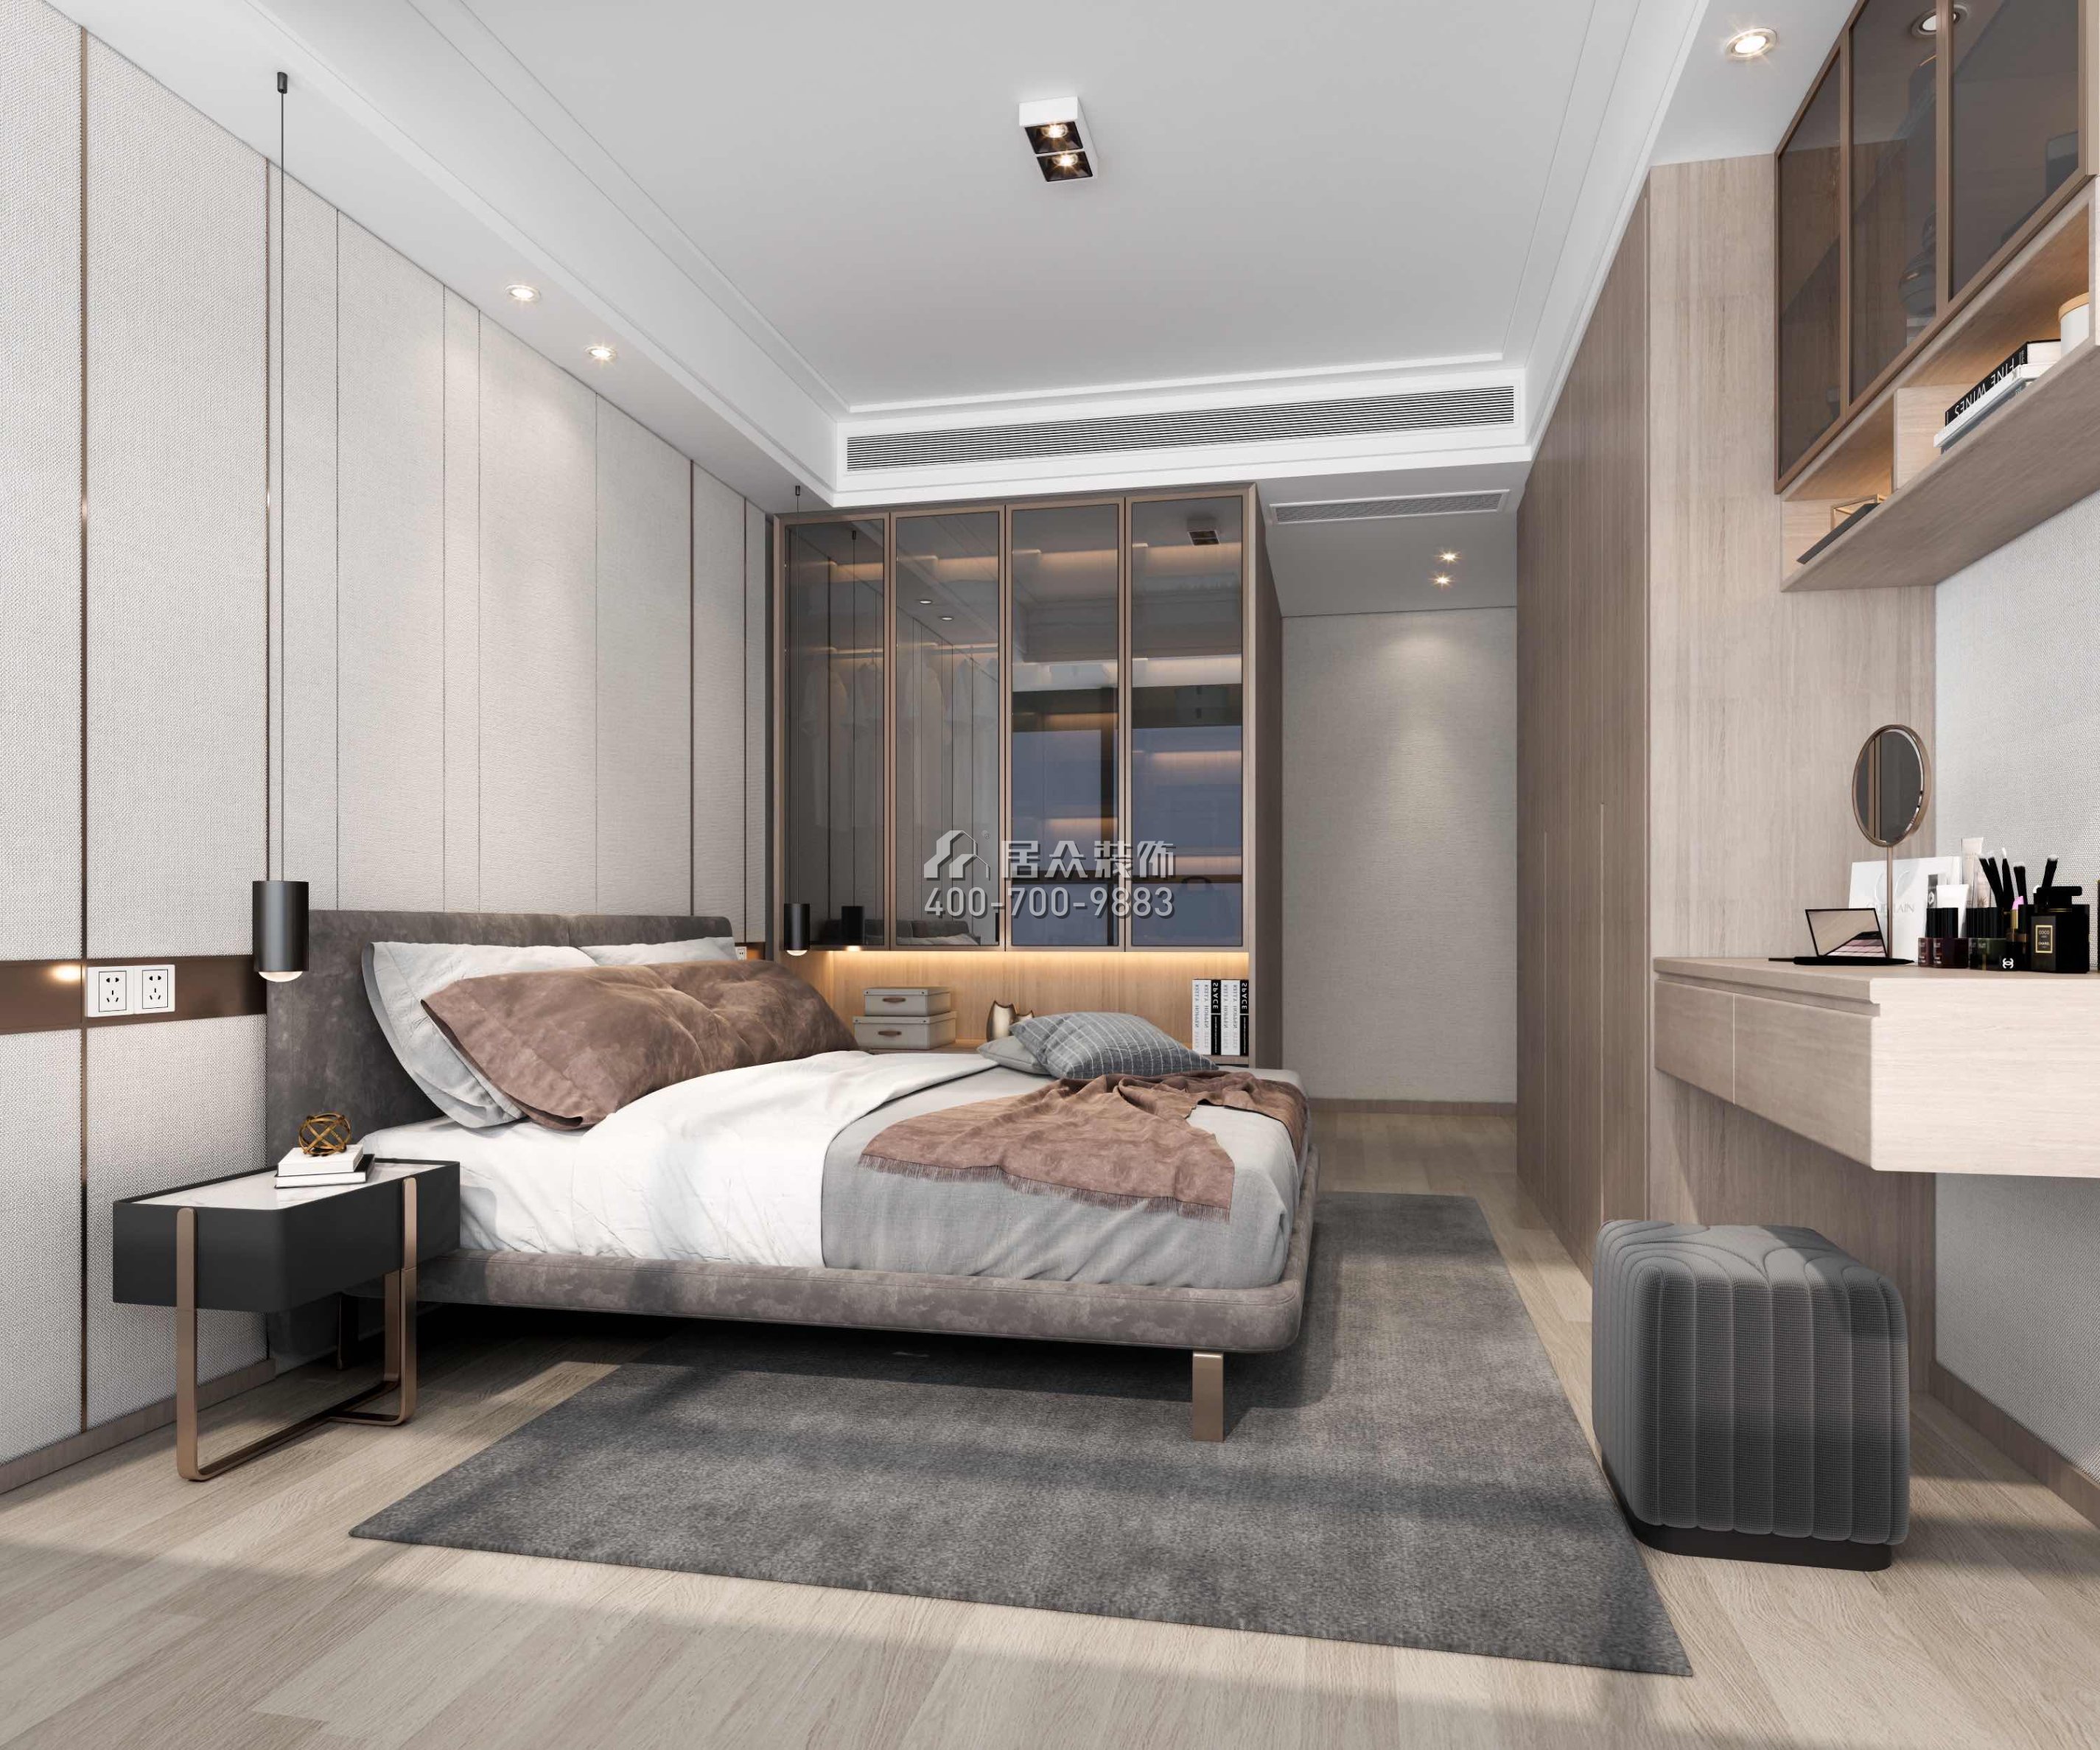 天鹅湖花园三期105平方米现代简约风格平层户型卧室装修效果图